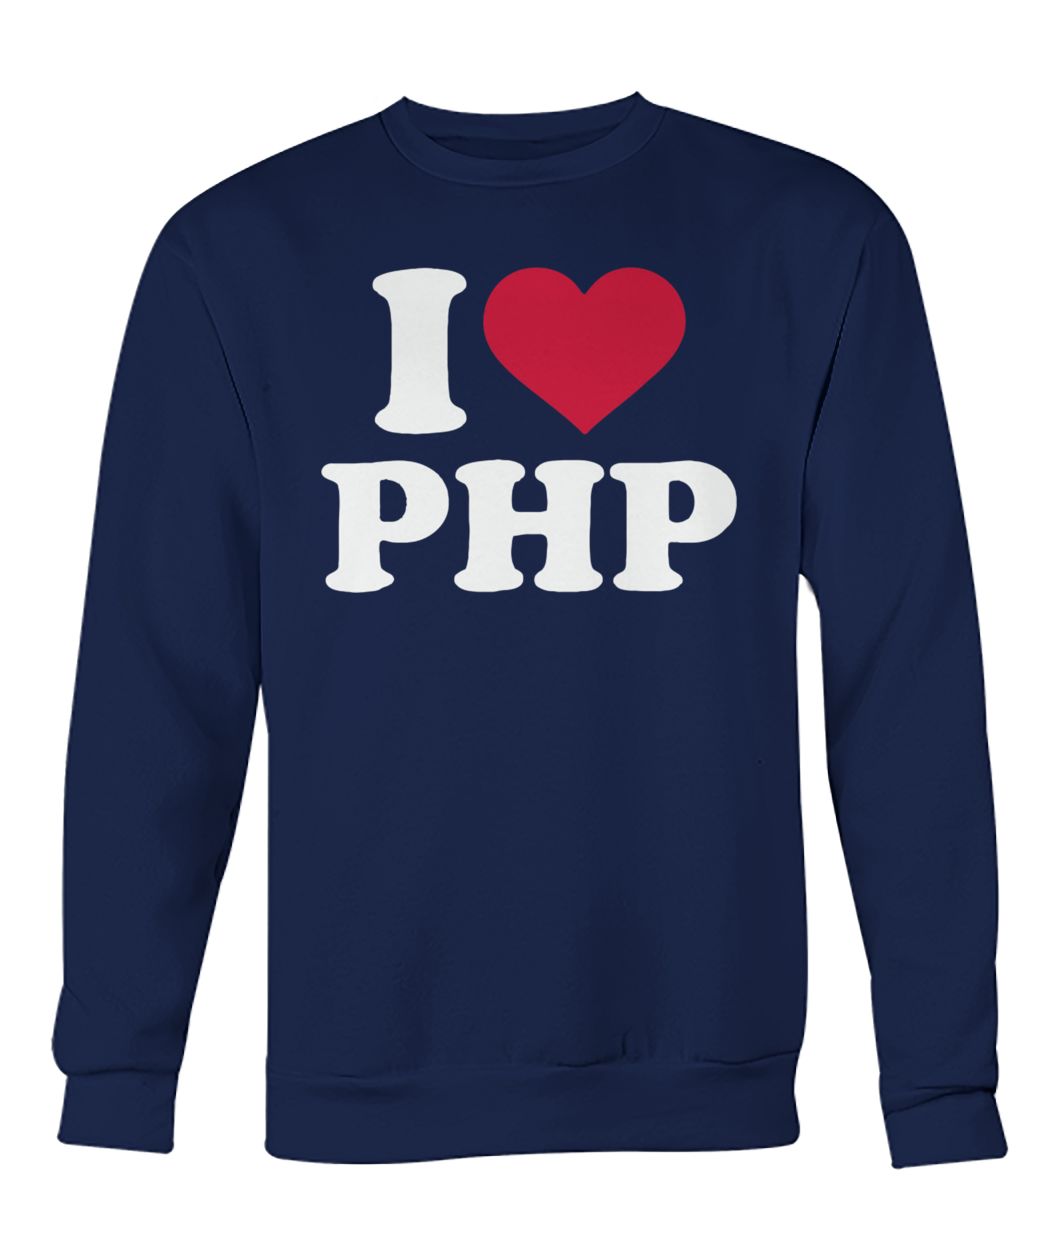 I love php crew neck sweatshirt